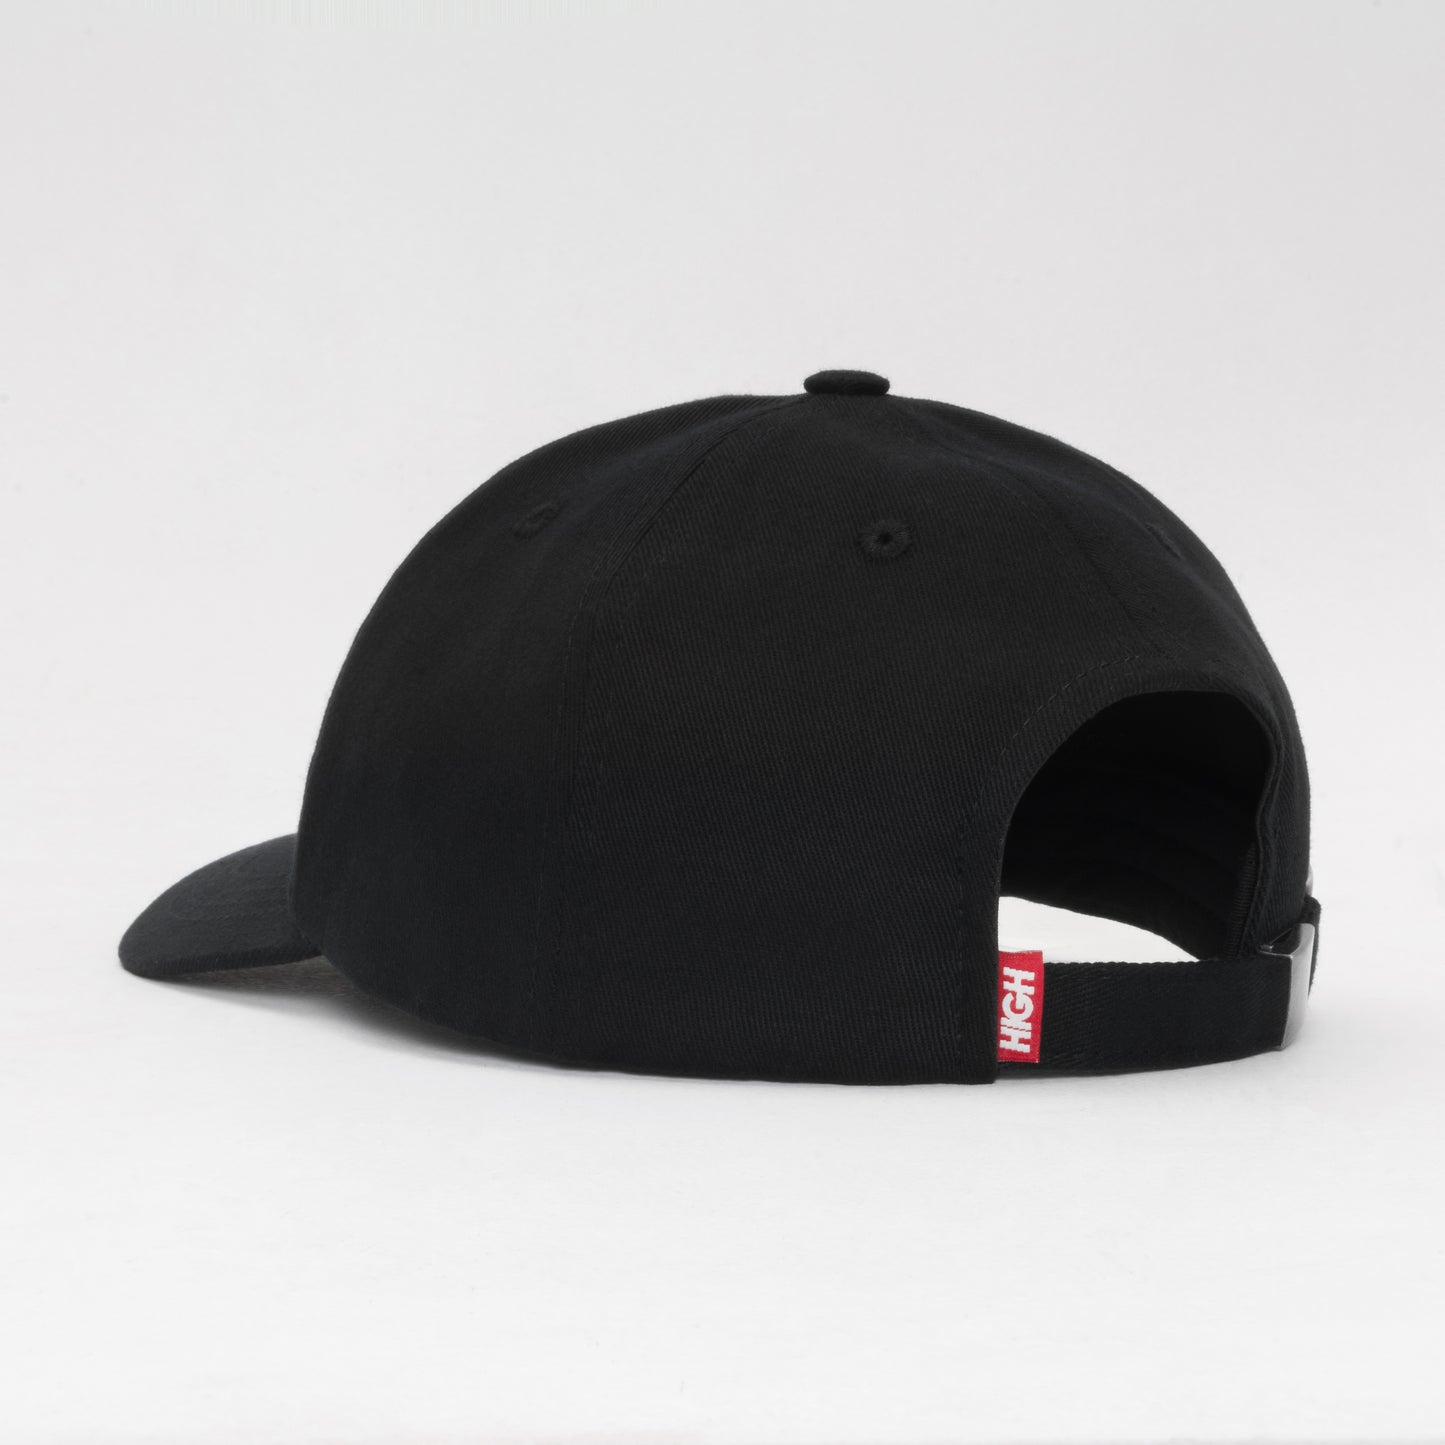 Polo Hat Fame Black